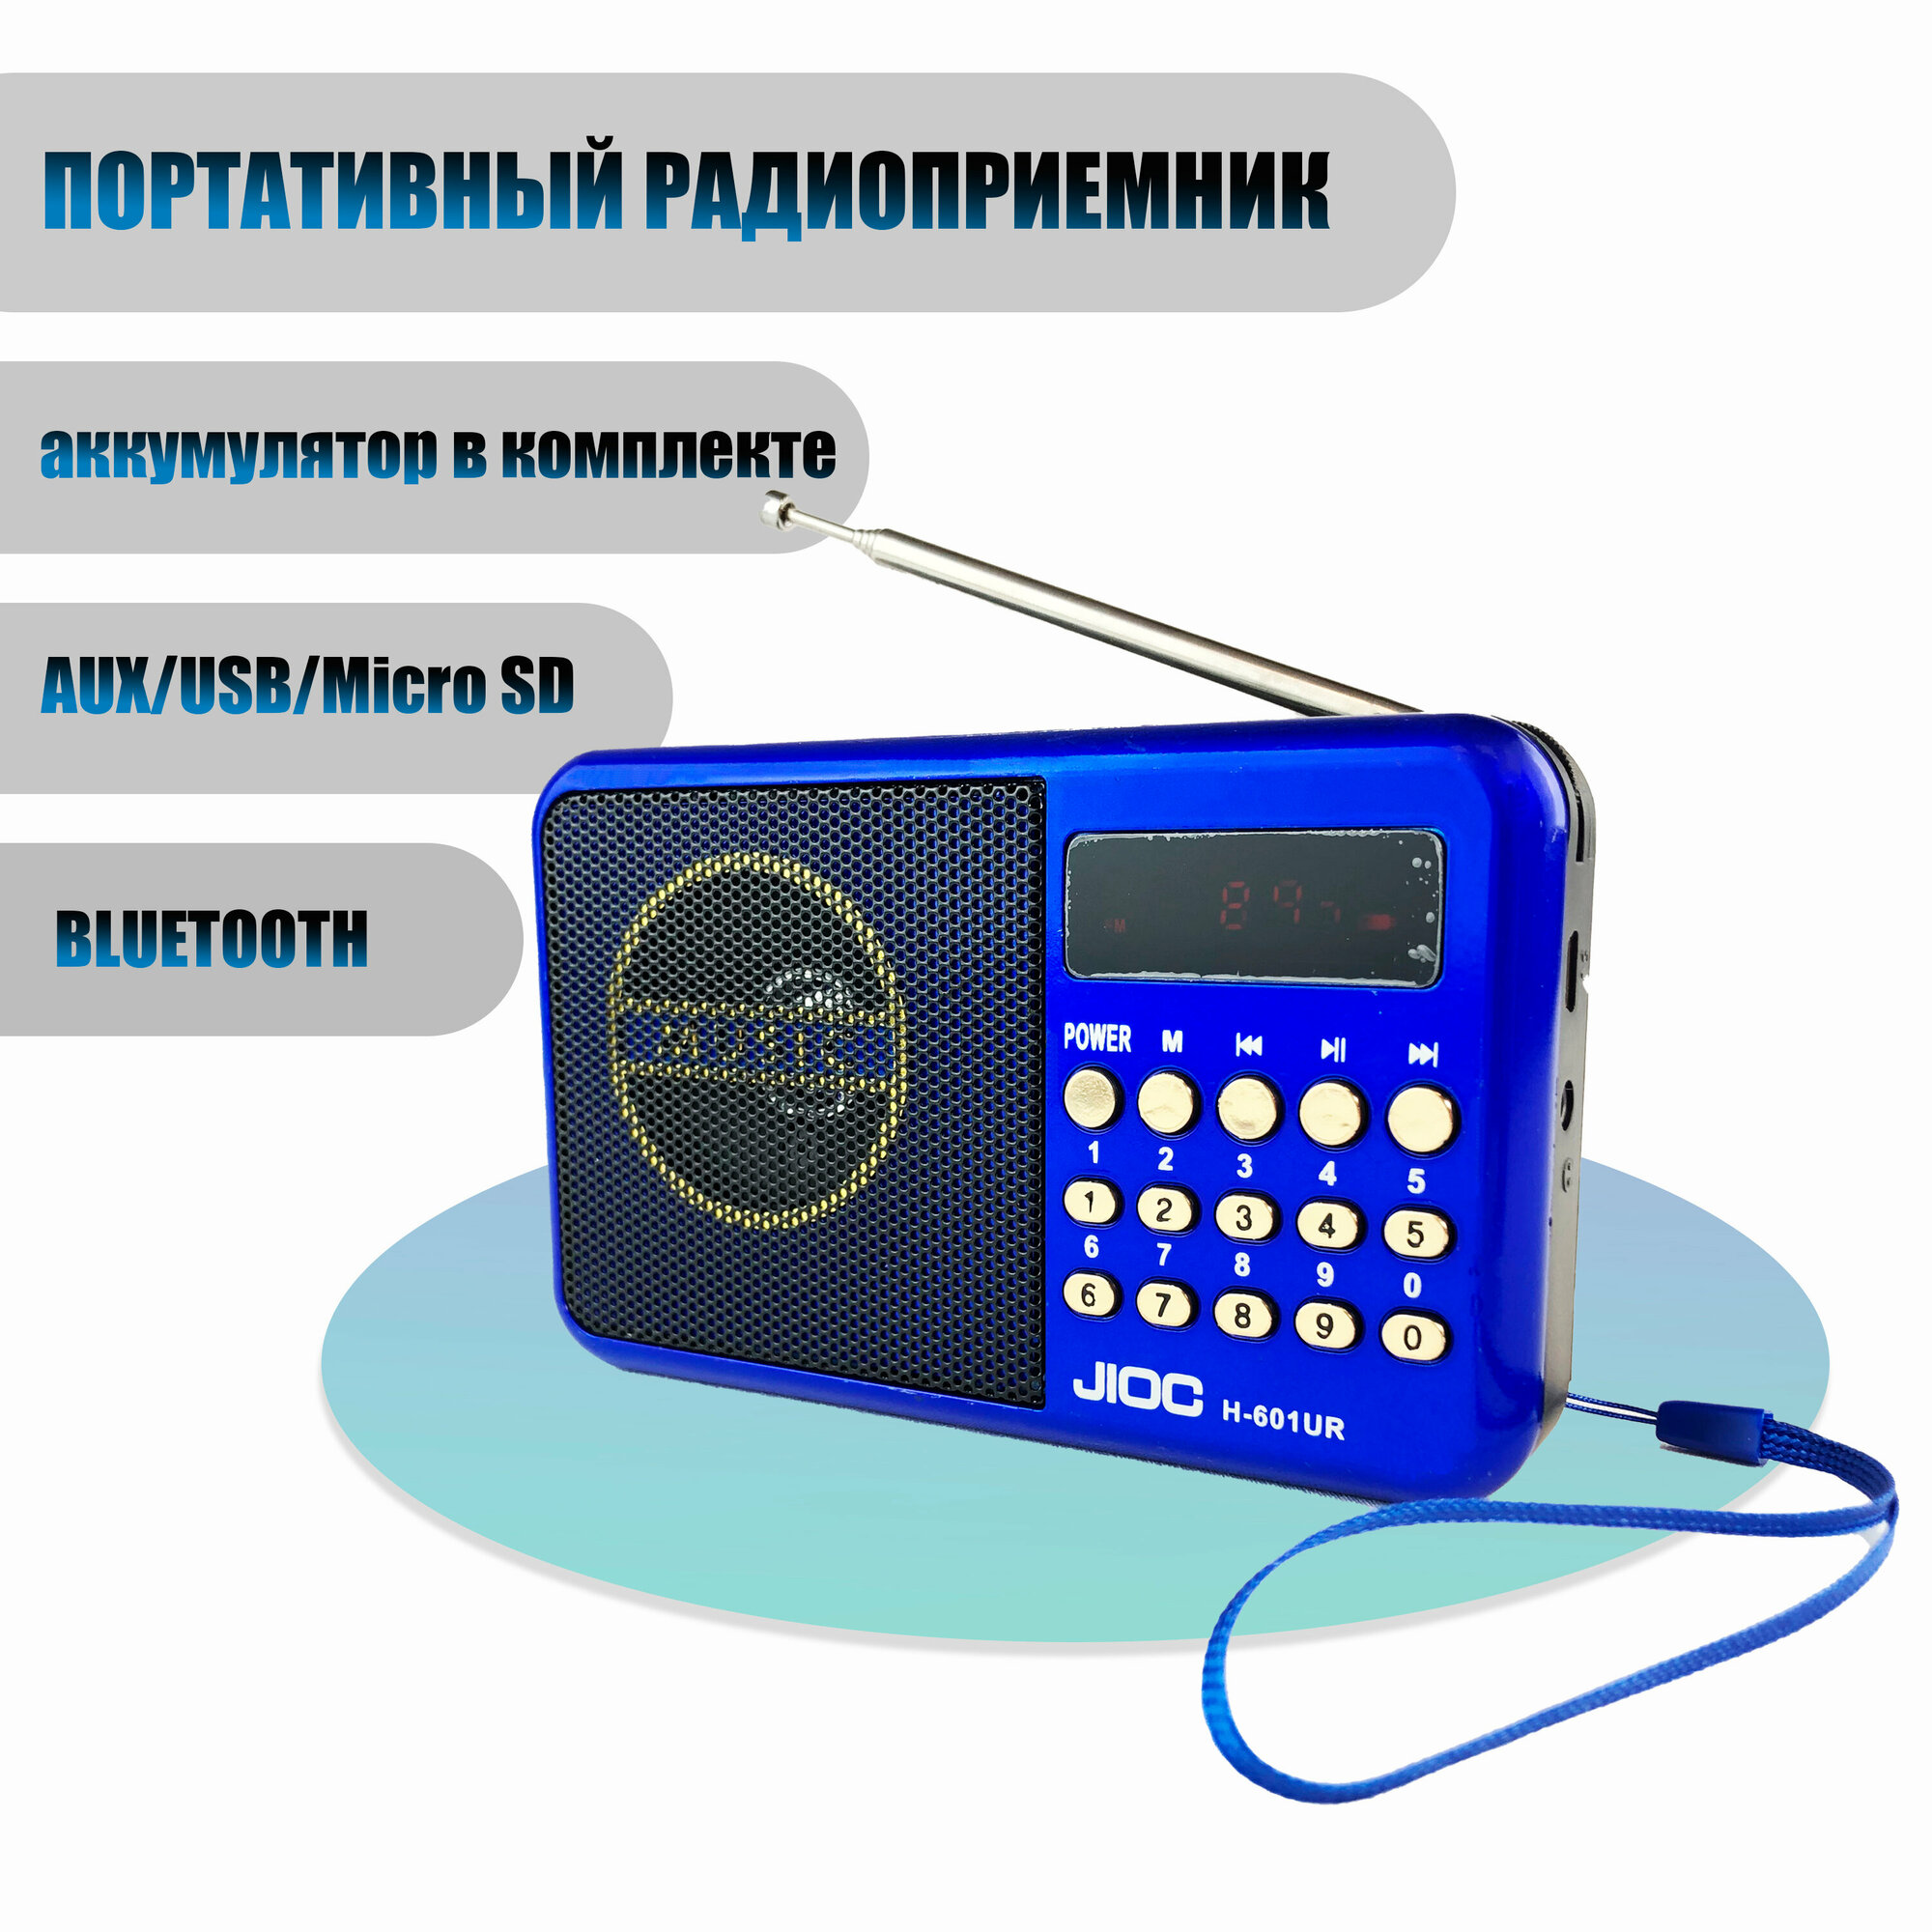 Карманное радио H-601UR цифровой, с автопоиском, аккумулятор в комплекте, синий